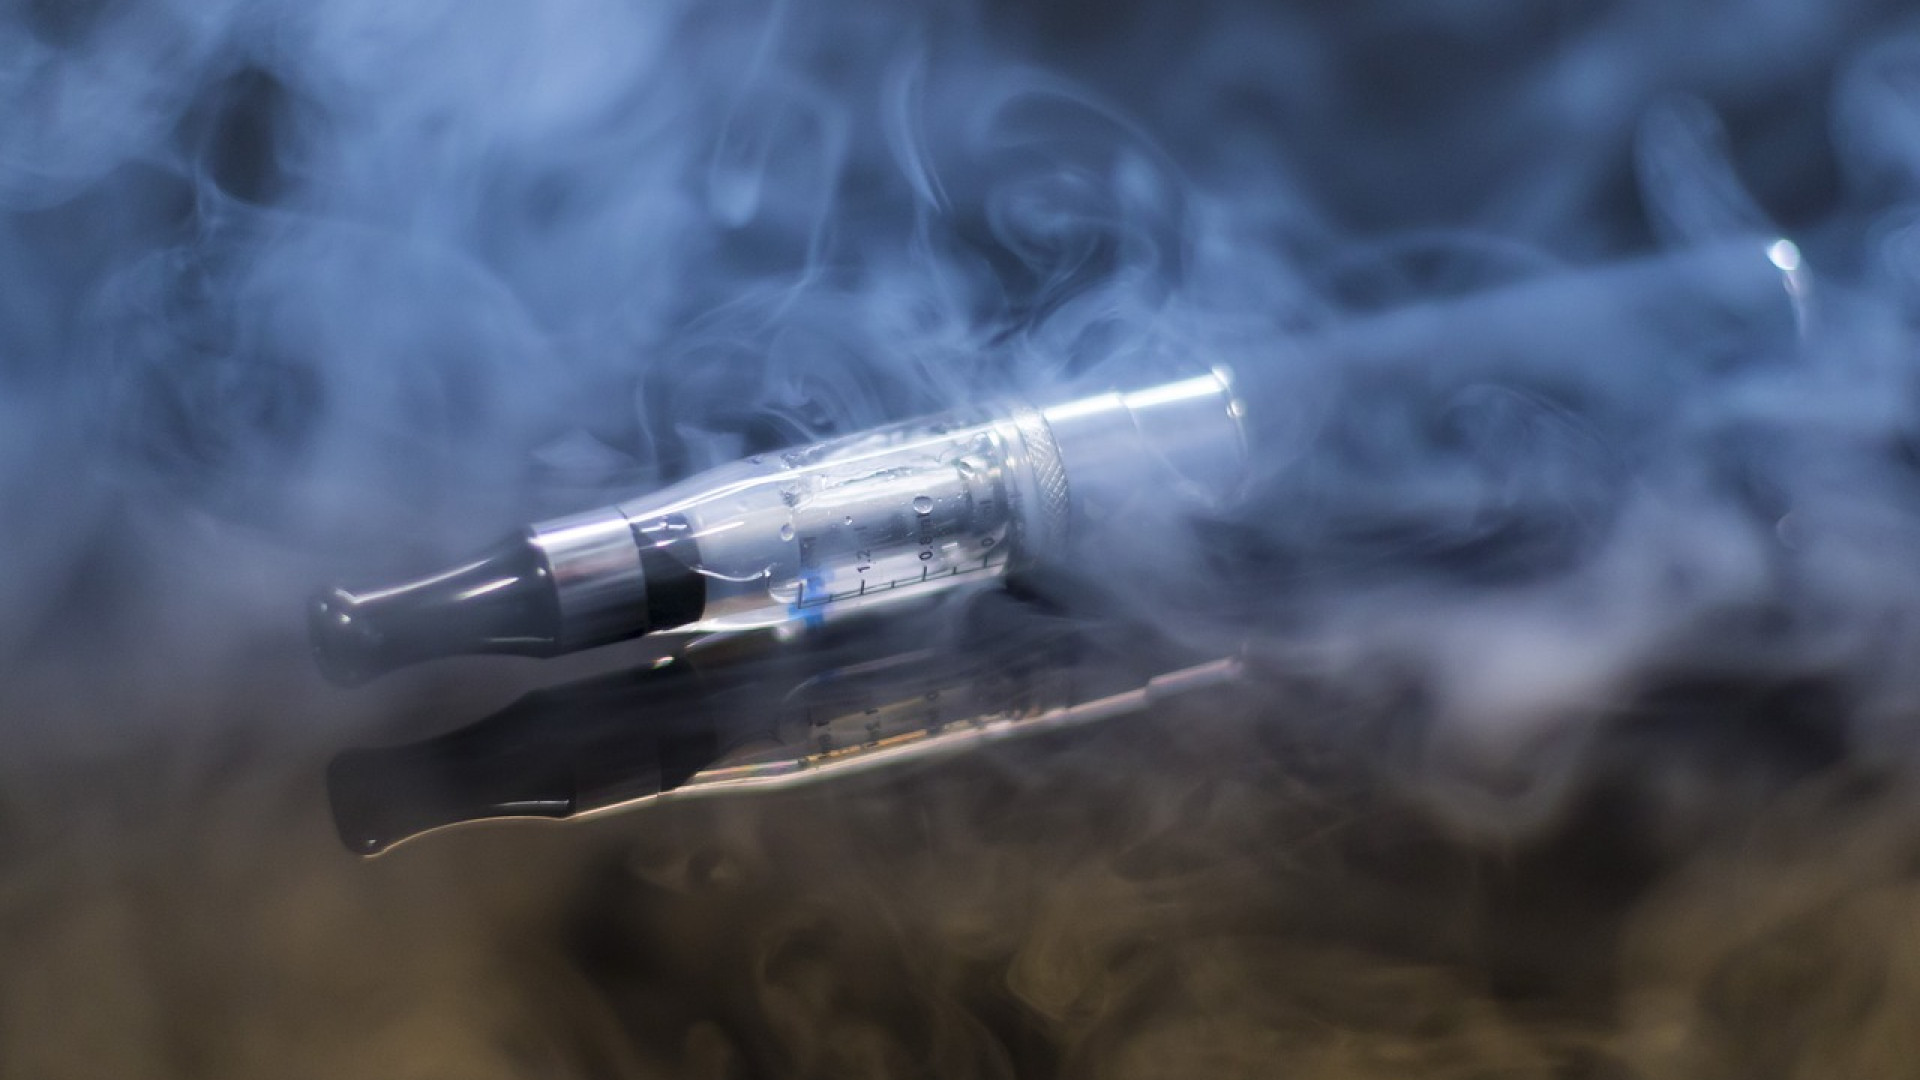 Sevrage tabagique : les astuces pour utiliser l’e-cig en hiver